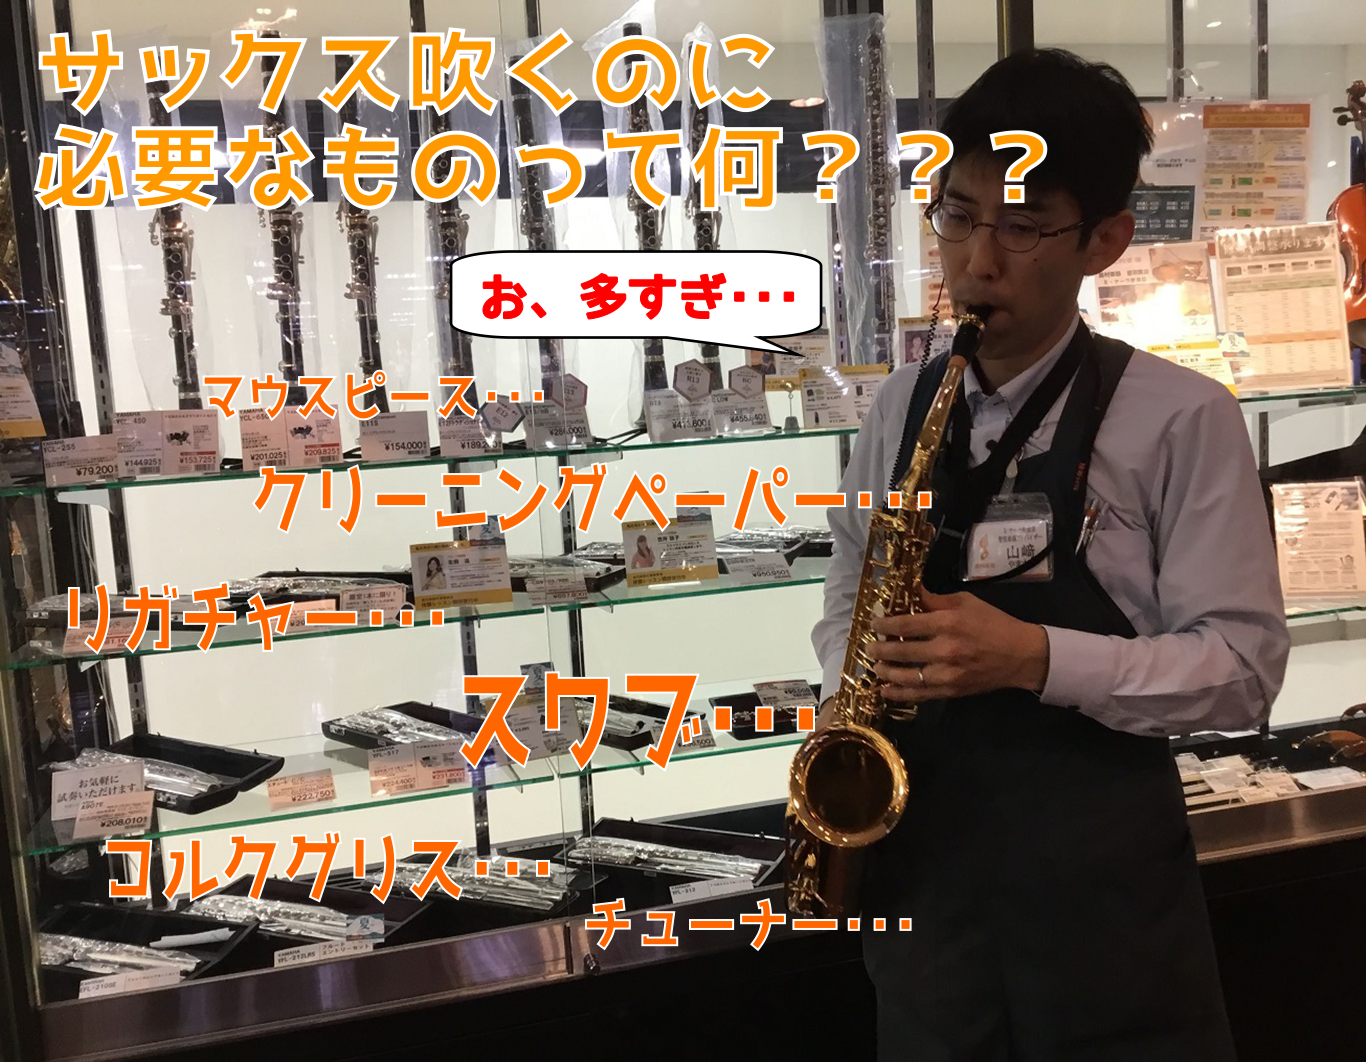 ===top=== [http://www.shimamura.co.jp/nara/index.php?itemid=104449::title=管楽器総合案内もご覧ください] *サックスを始めたら必要なもの こんにちは、管楽器アドバイザーの山﨑です。 サックスを始めると、楽器以外にも用意しておき […]